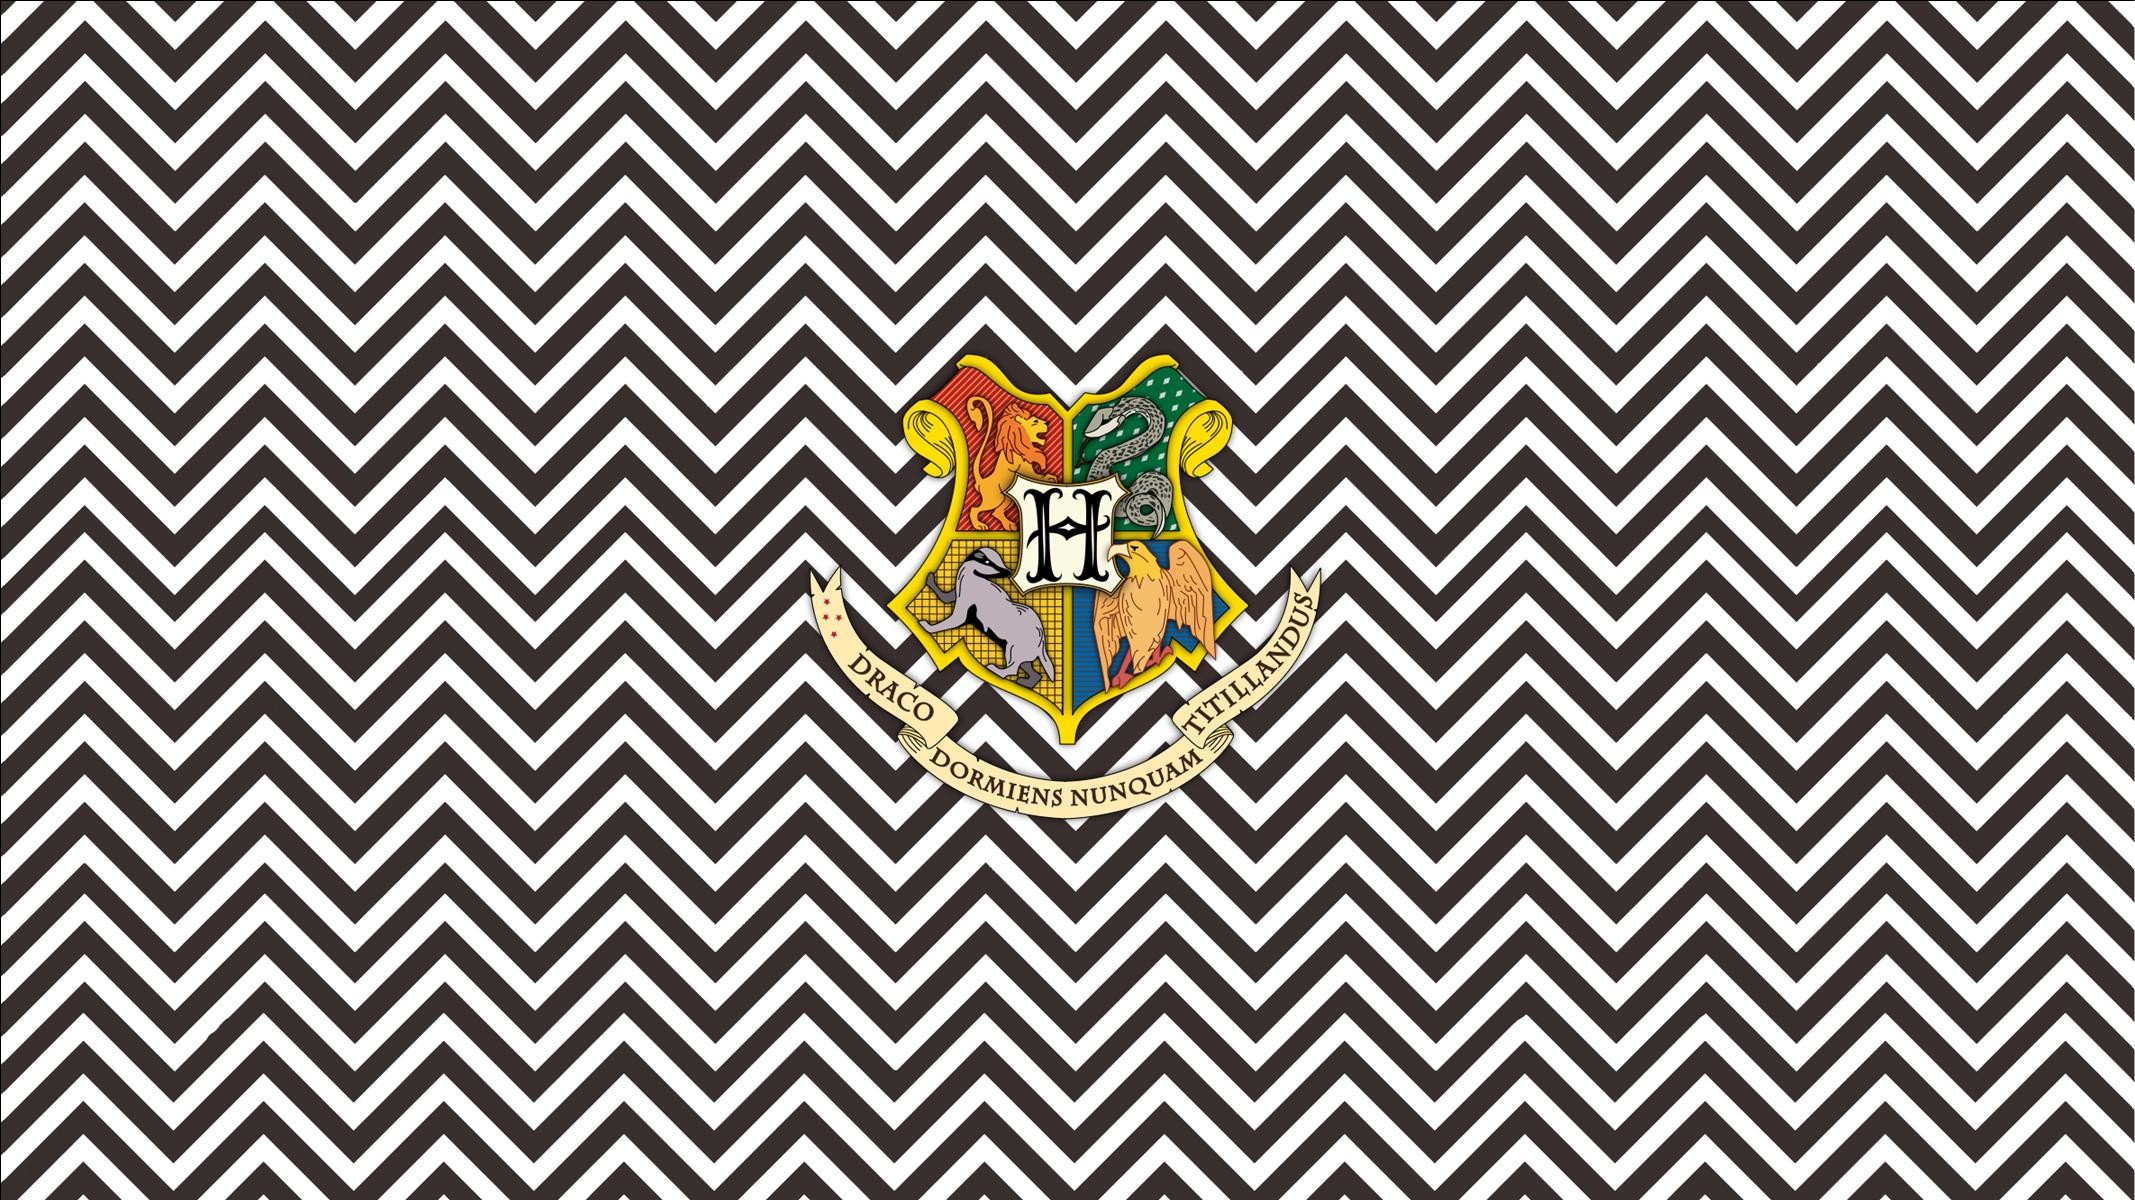 2135x1200 Hogwarts Crest on chevron widescreen desktop wallpaper Widescreen Wallpaper  made by Deanna